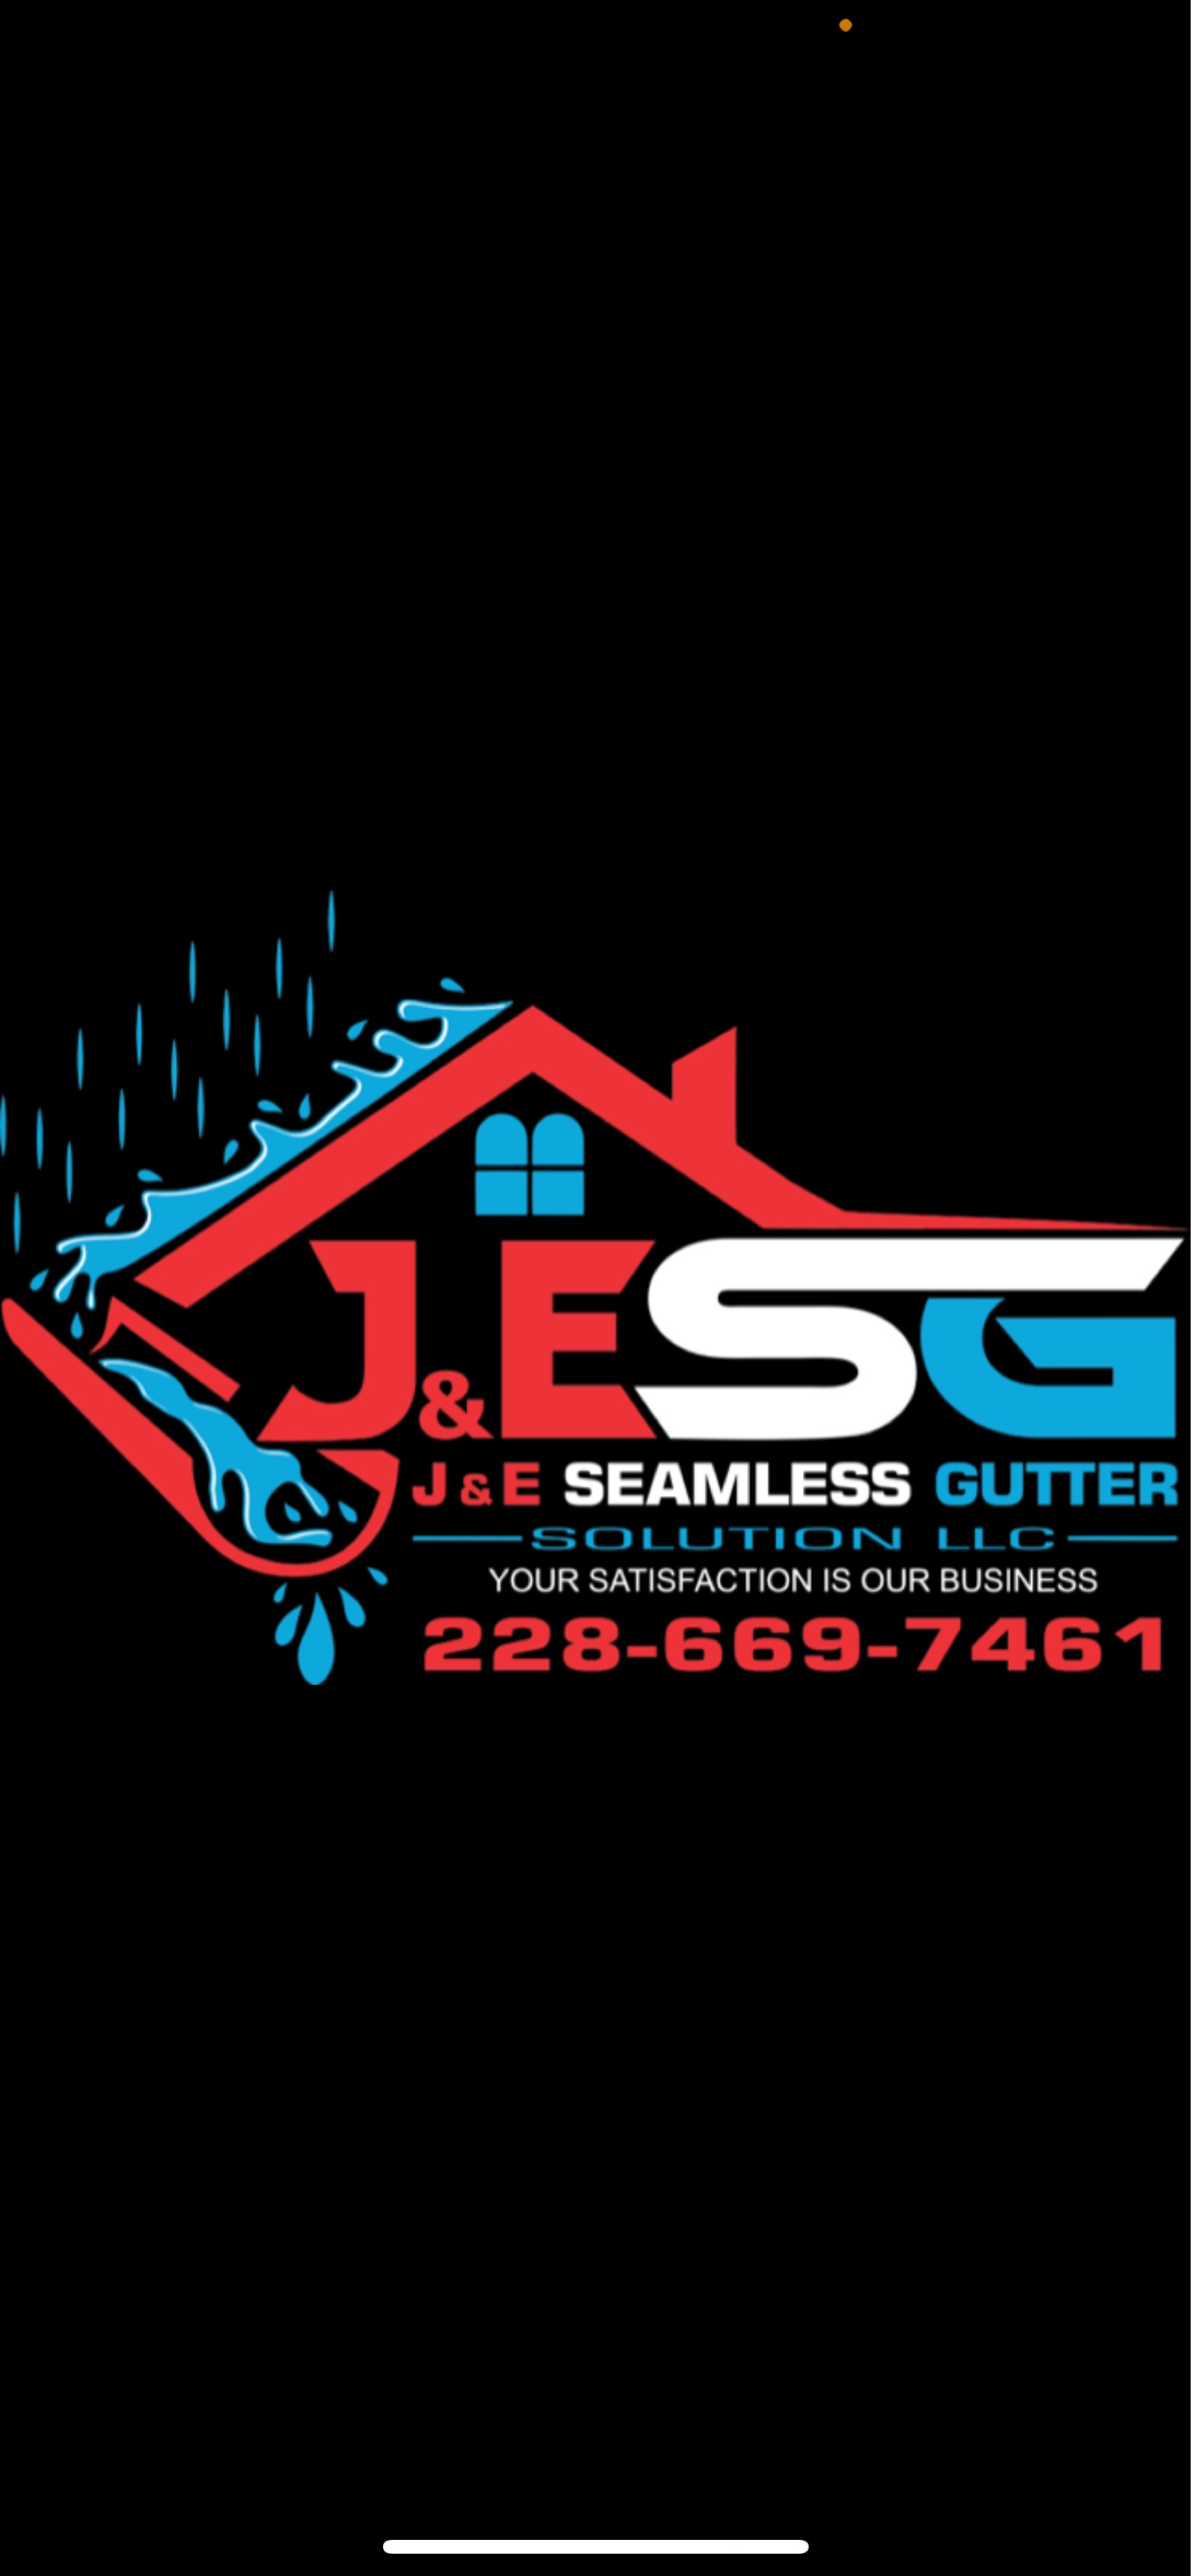 A-1 Seamless Gutter Solutions, LLC Logo